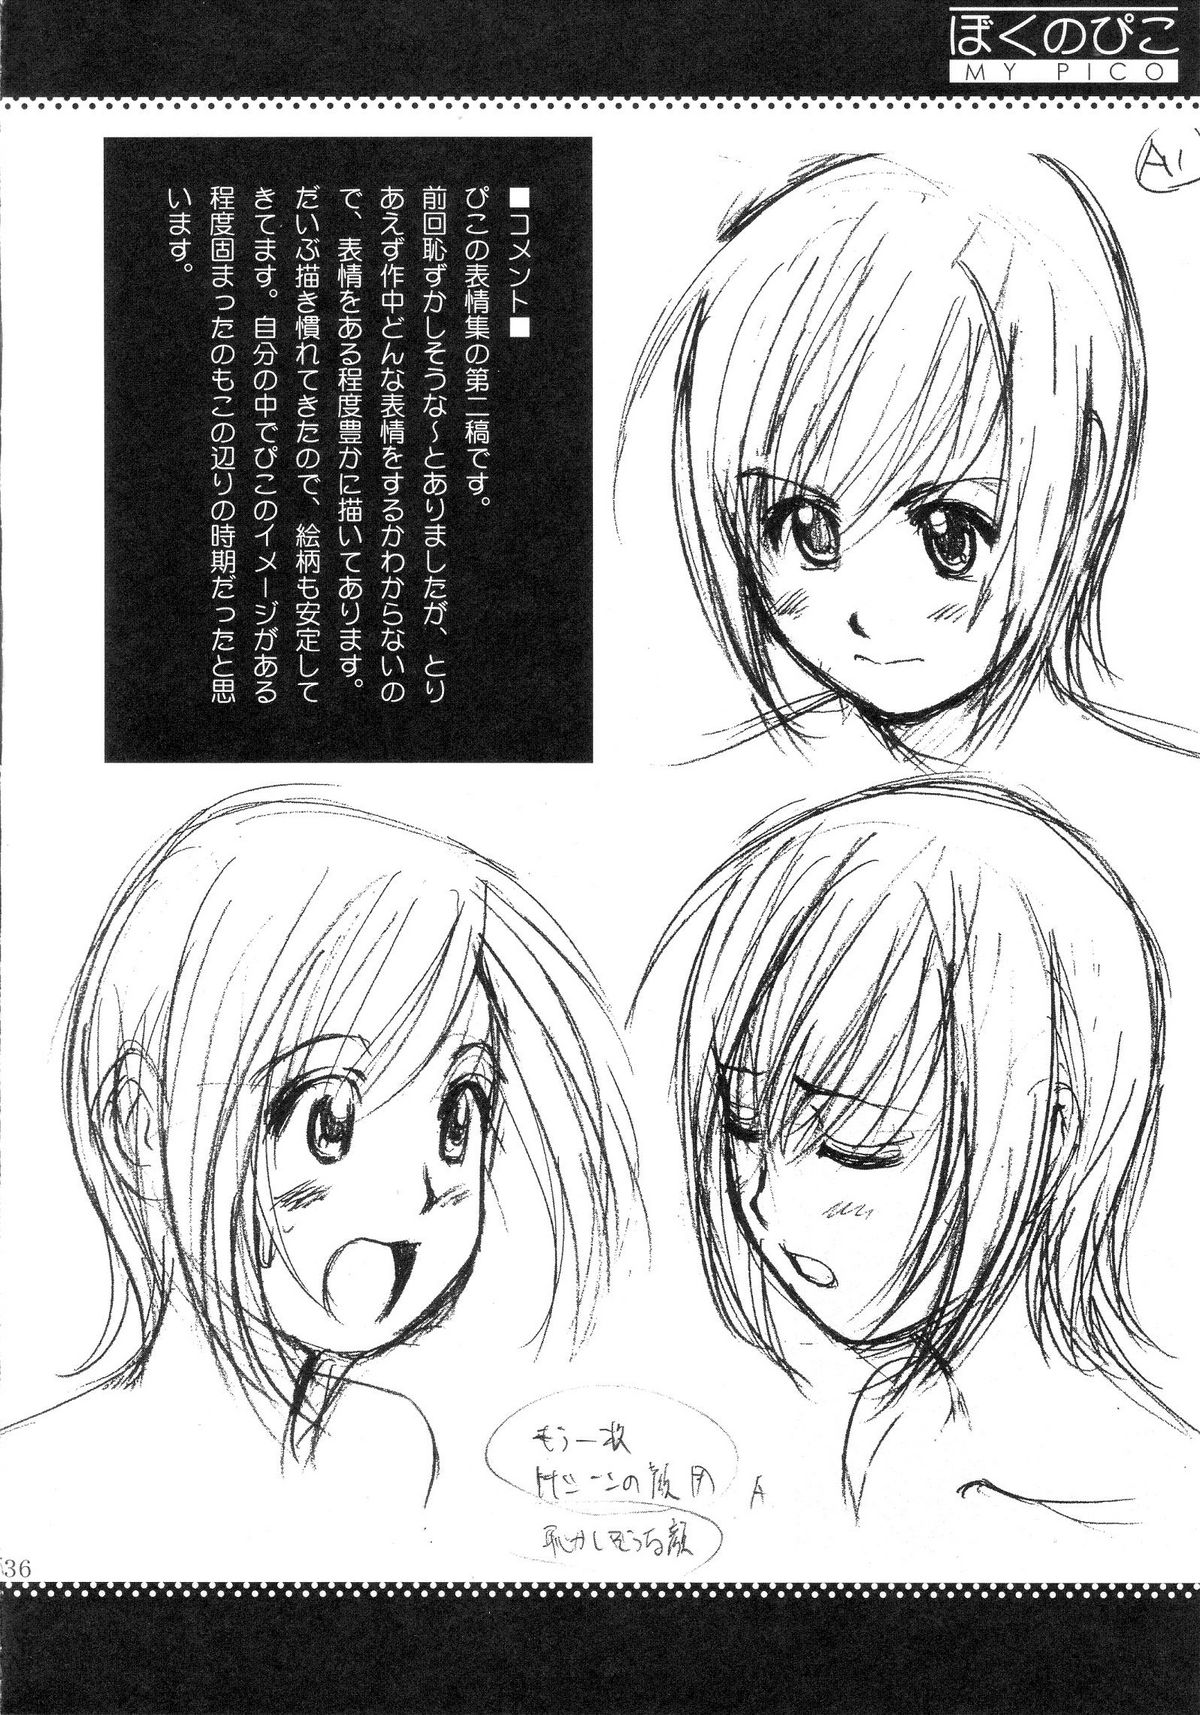 (COMIC1) [Saigado] Boku no Pico Comic + Koushiki Character Genanshuu (Boku no Pico) page 34 full